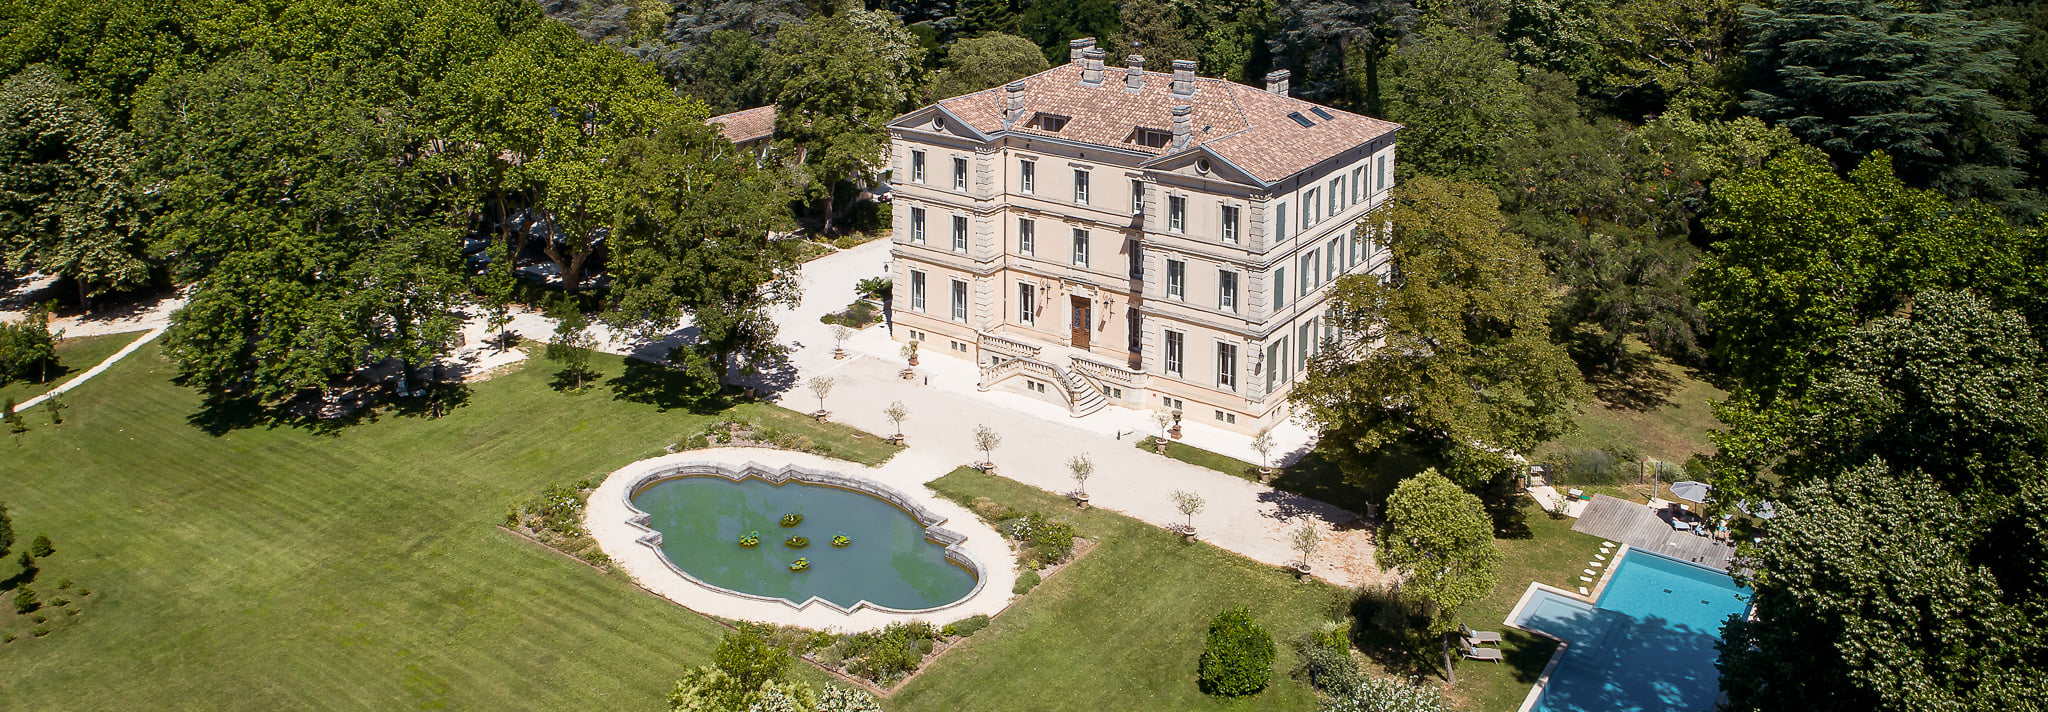 Aus der Vogelperspektive: das Château de Montcaud mit seinem Park und Schwimmbad in der Provence, Südfrankreich